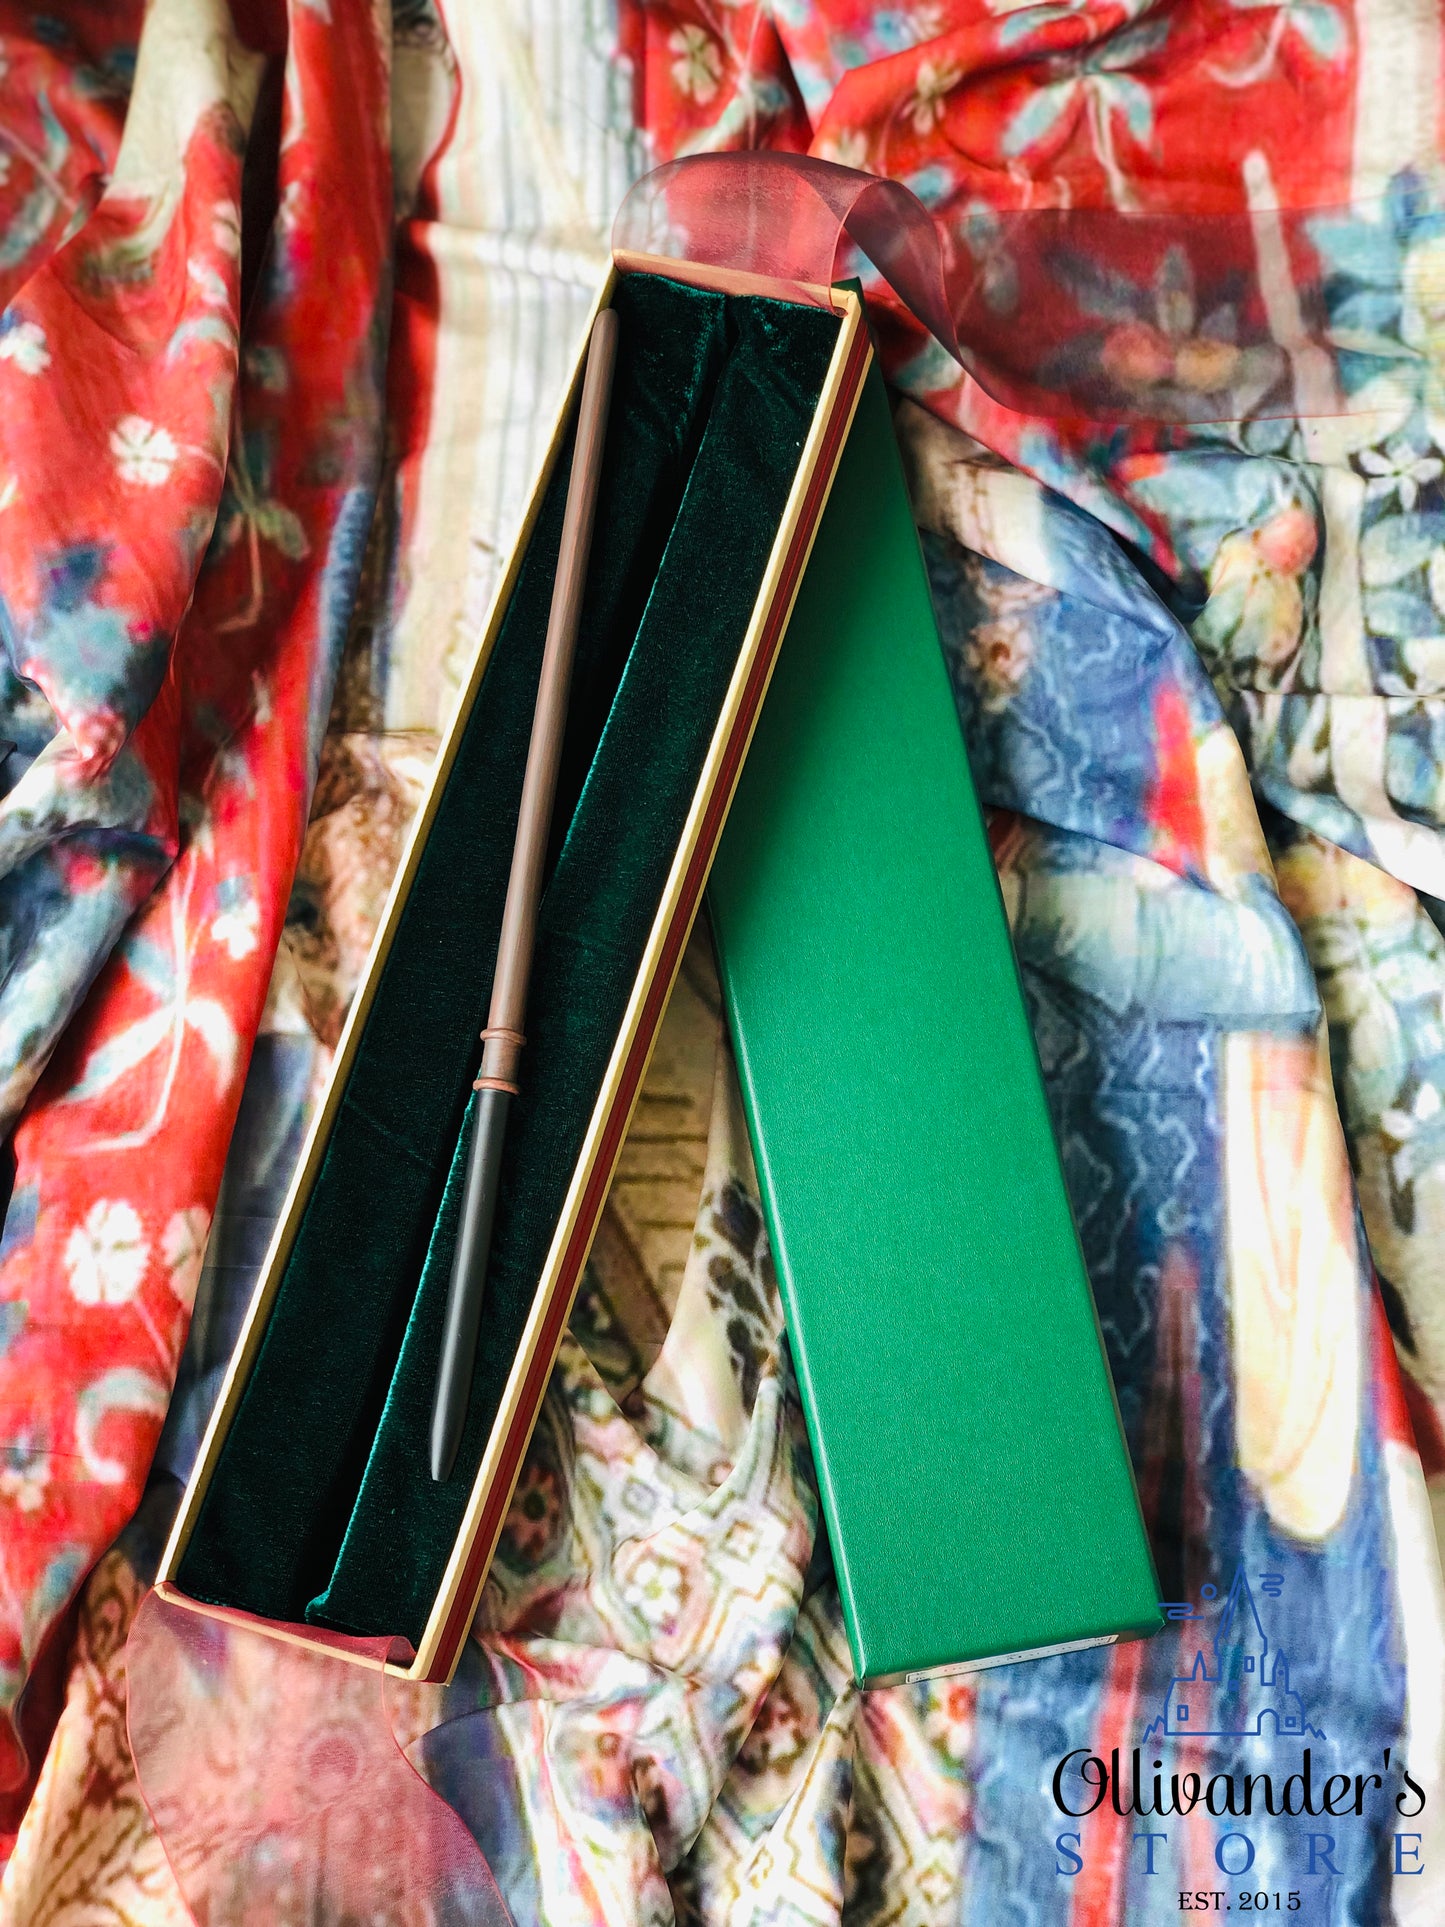 დრაკო მალფოის ჰარი პოტერის ნობლ ქოლექშენის Noble Collection ჯადოსნური საკოლექციო ჯოხი ჯოხები ჰარი პოტერის ნივთები პროდუქცია აქსესუარები მაღაზია